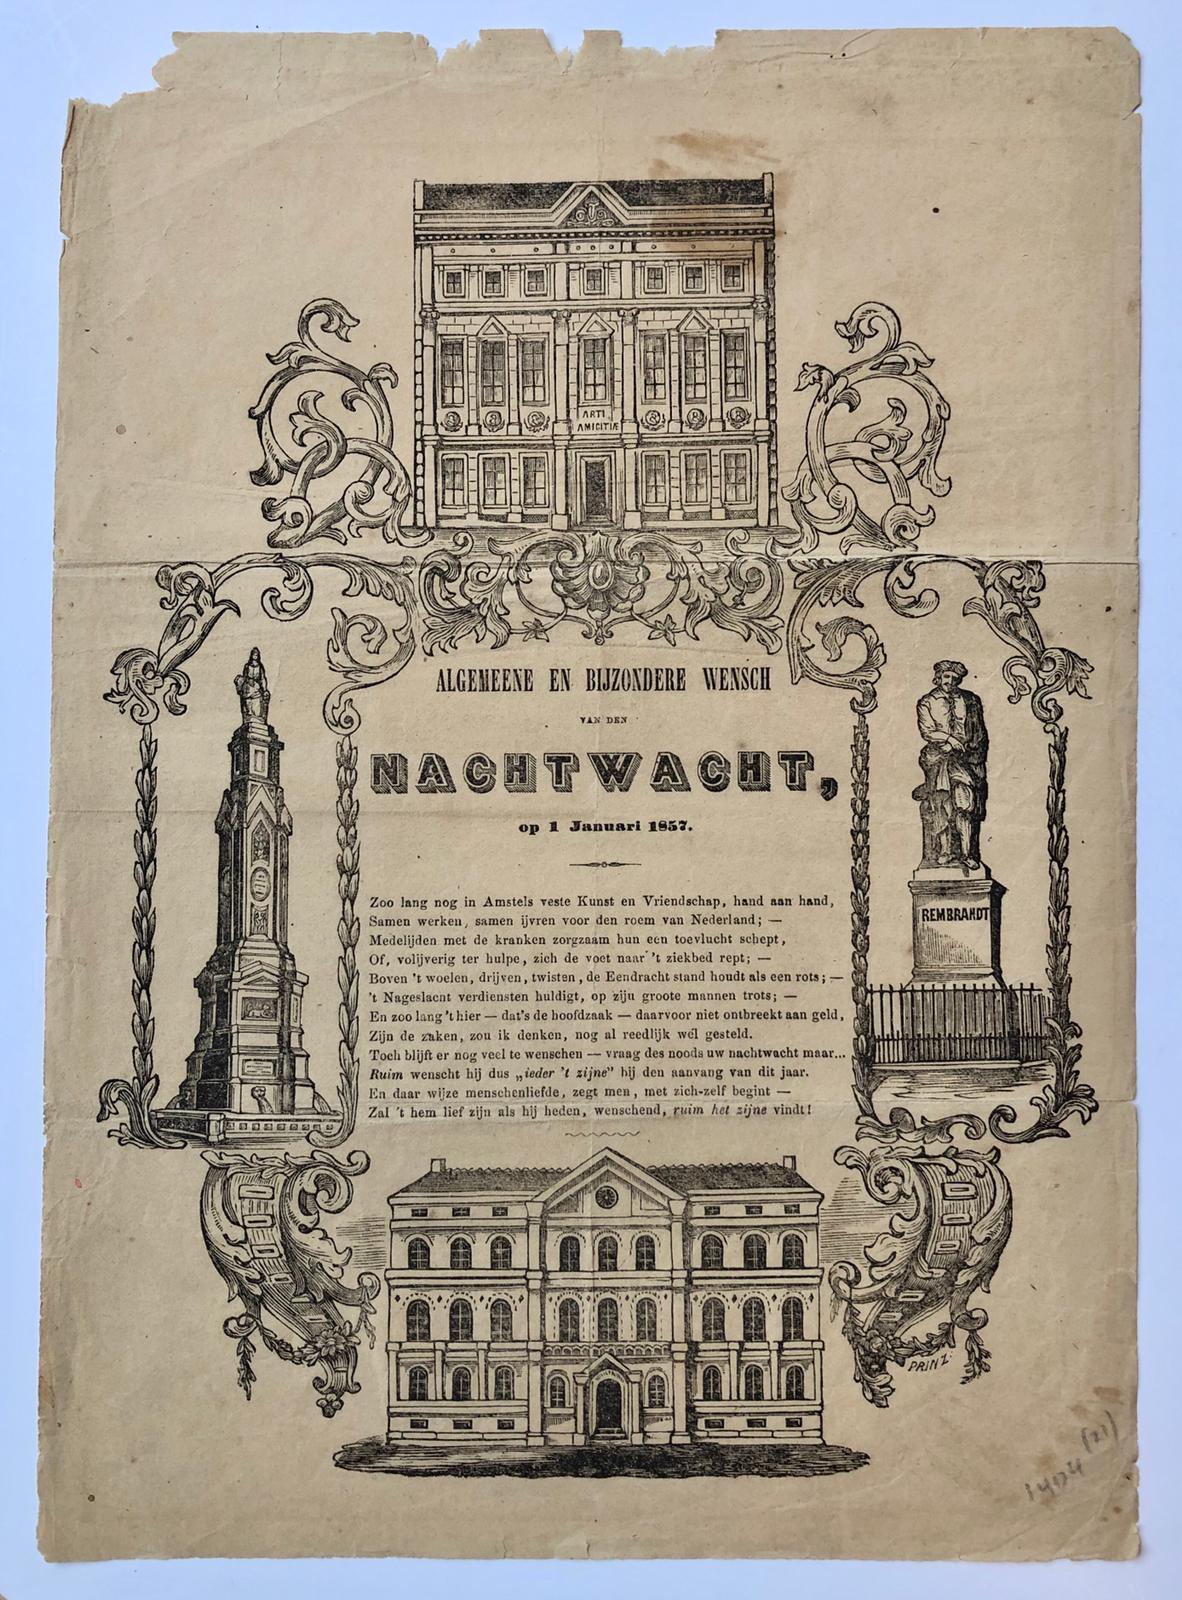 [Woodcut and letterpress, New Year's Wish] ALGEMEENE EN BIJZONDERE WENSCH VAN DEN NACHTWACHT, op 1 Januari 1857, published 1857.